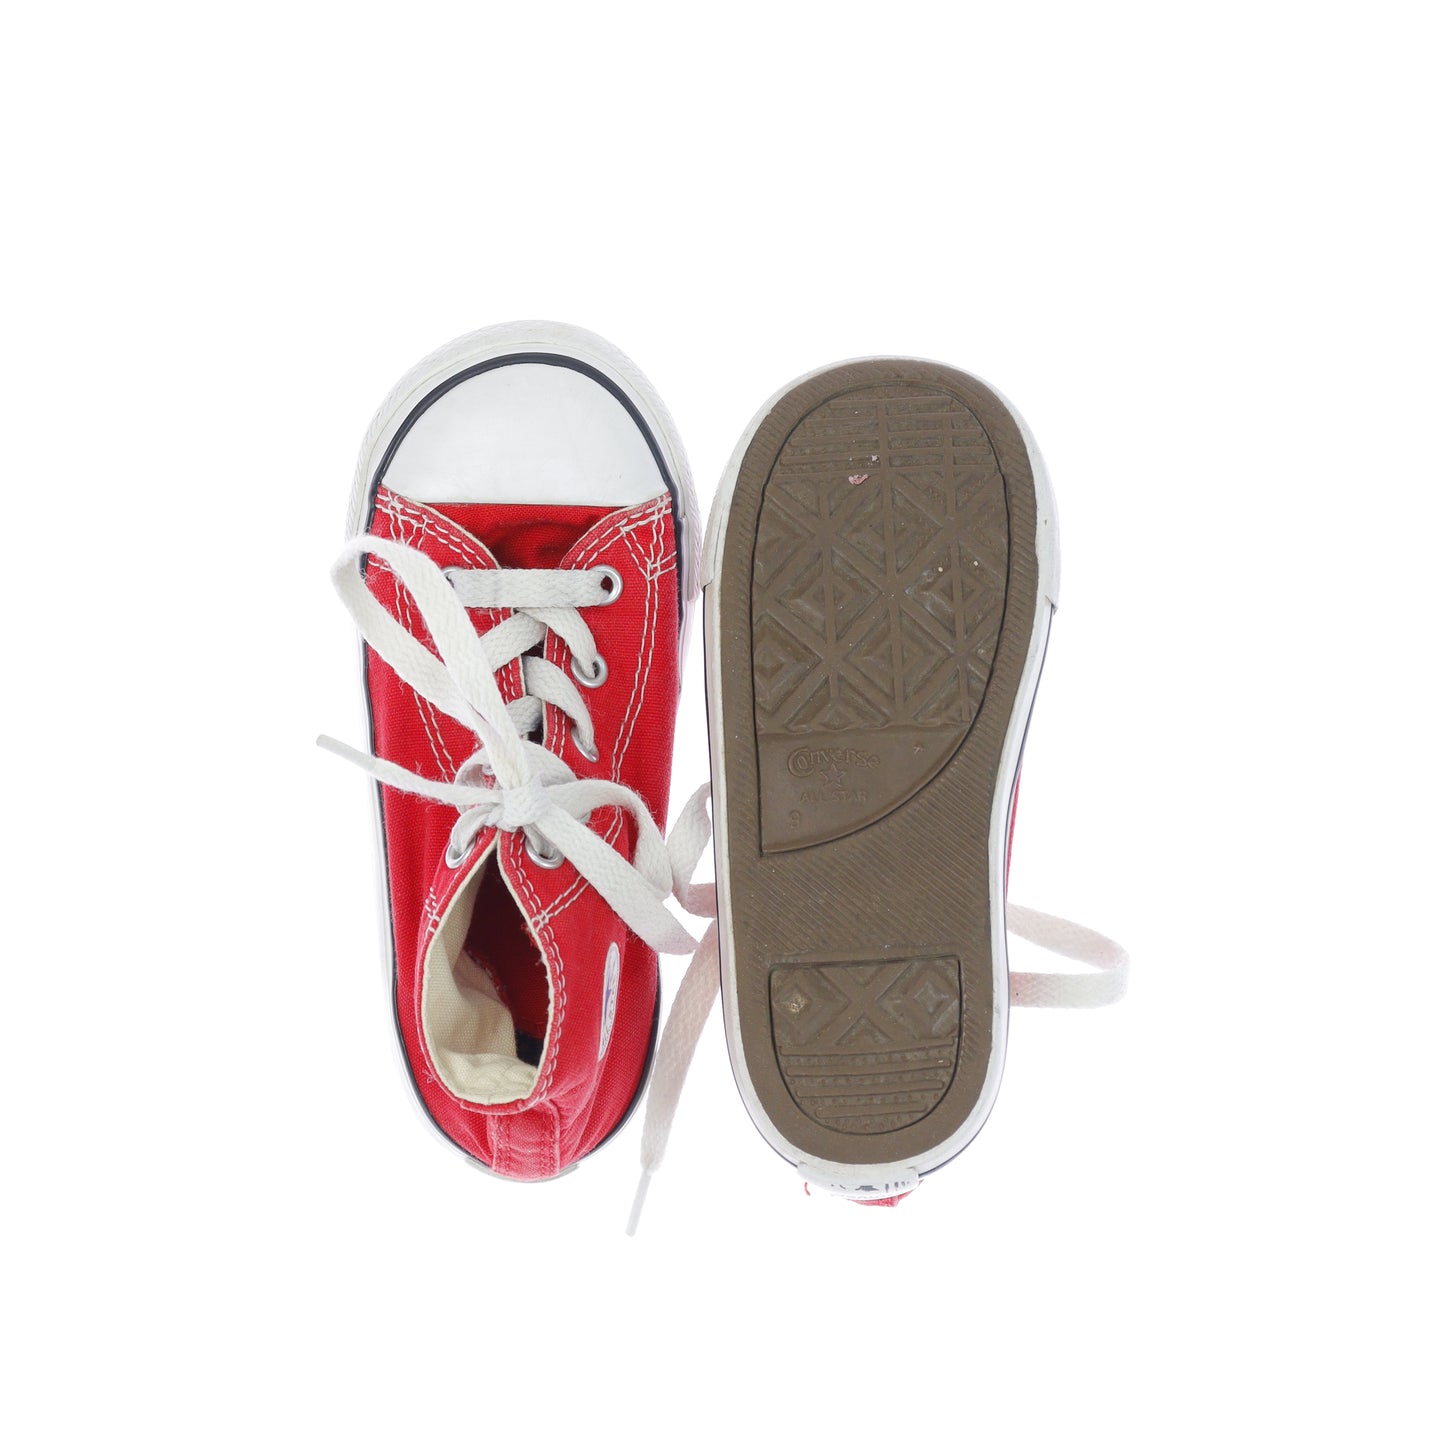 Παπούτσια Converse (3 ετών - 4 ετών)